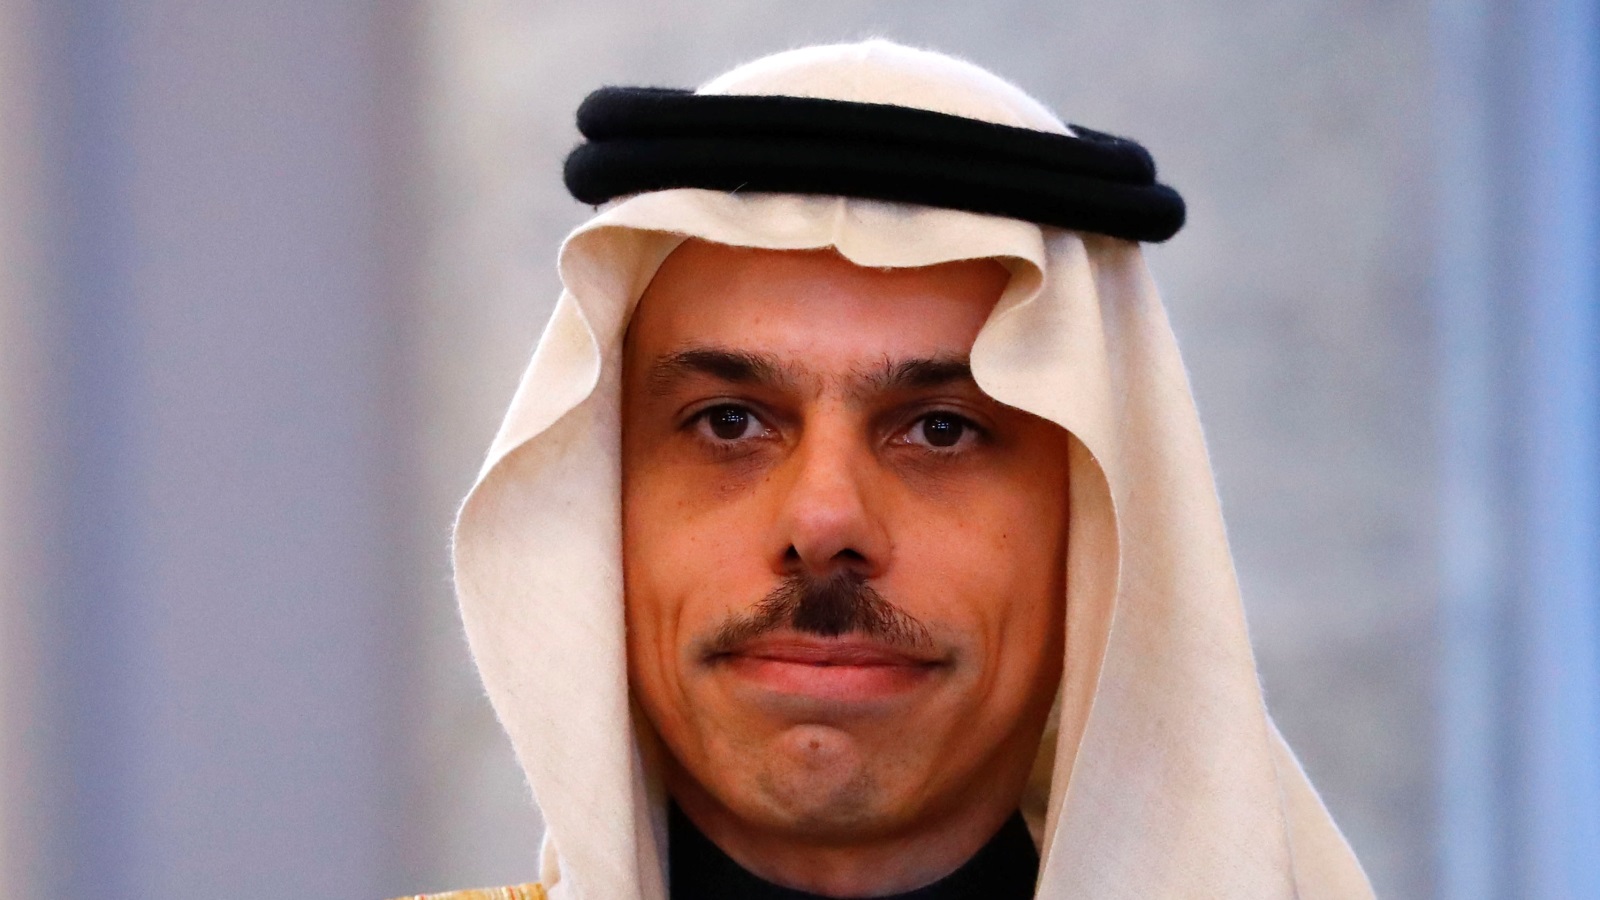 الأمير فيصل بن فرحان آل سعود كان سفيرا للسعودية في ألمانيا قبل تعيينه اليوم وزيرا للخارجية (رويترز)